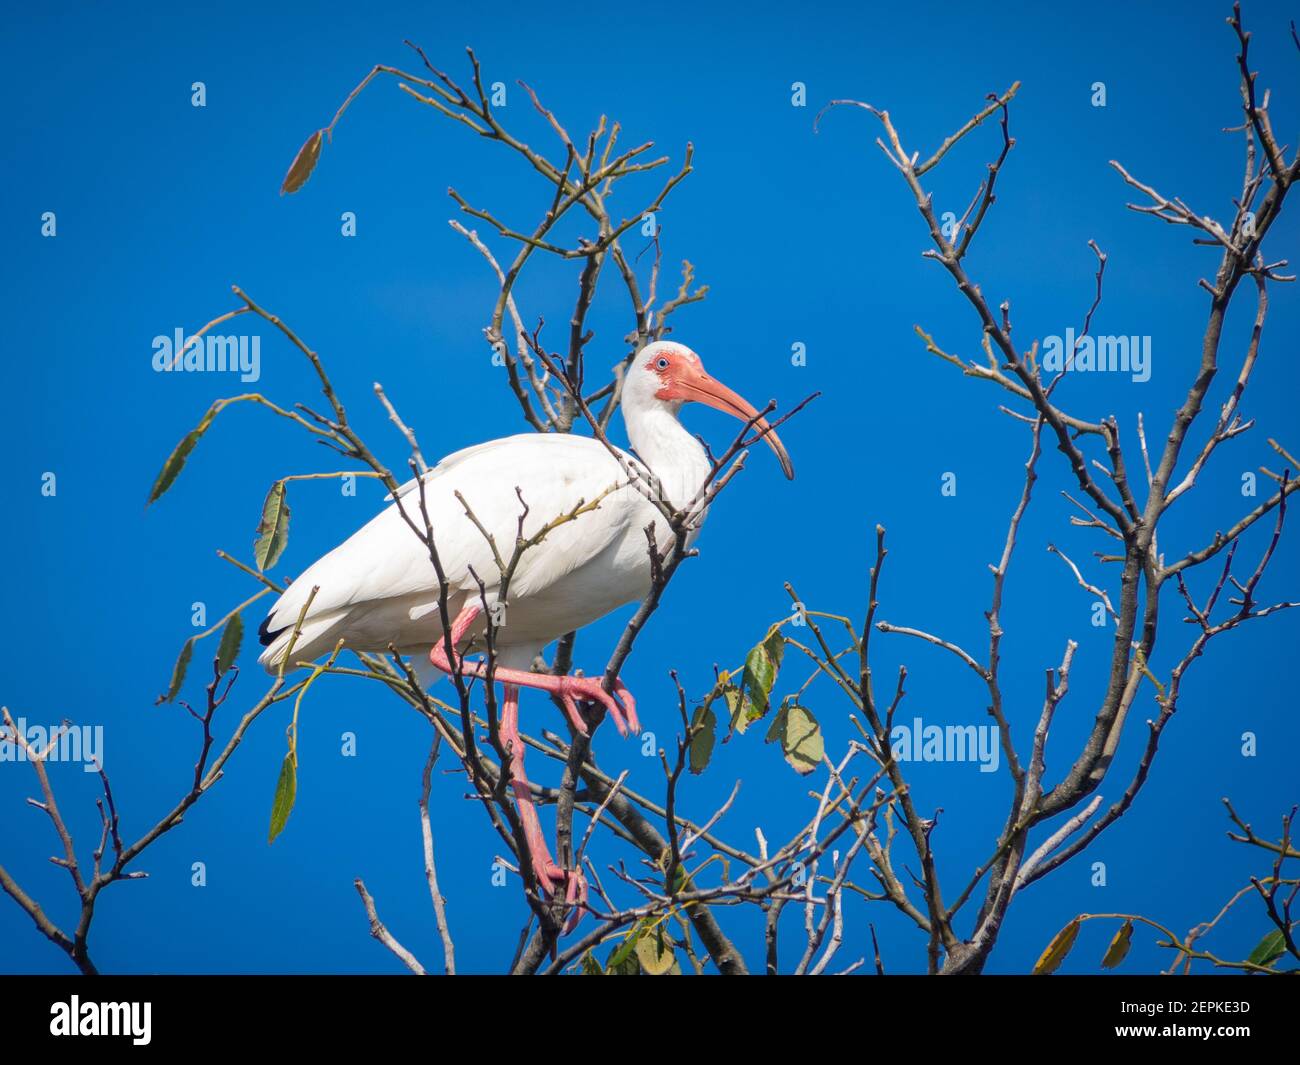 White ibises on a tree Stock Photo